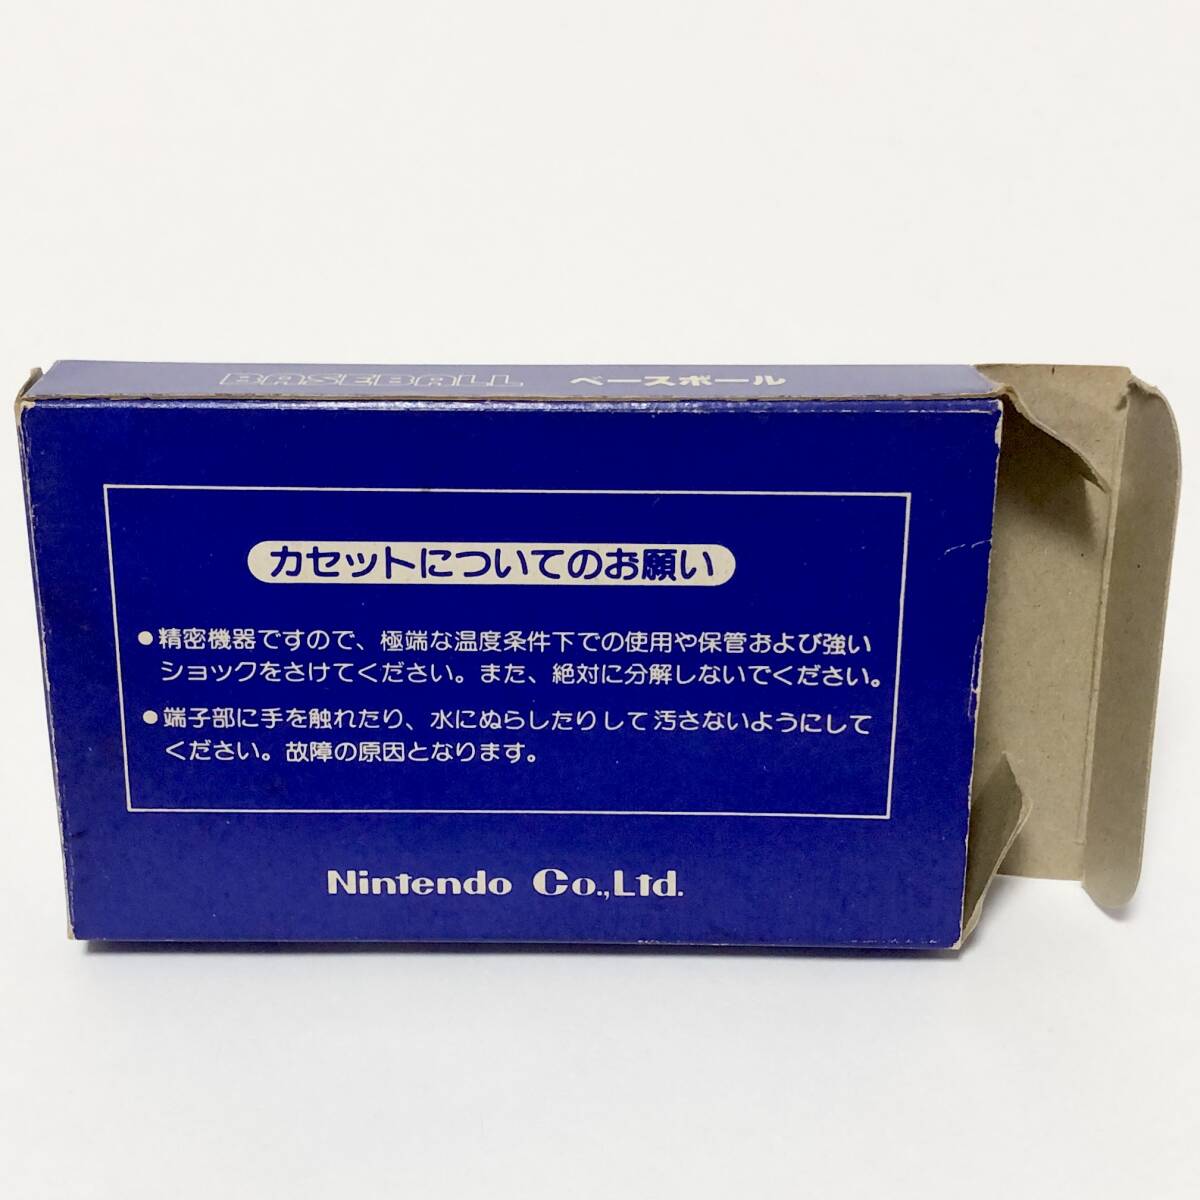 ファミコン ベースボール 小箱版 箱説付き 痛みあり 操作法早見図付き Nintendo Famicom Baseball Small Box Version CIB Testedの画像3